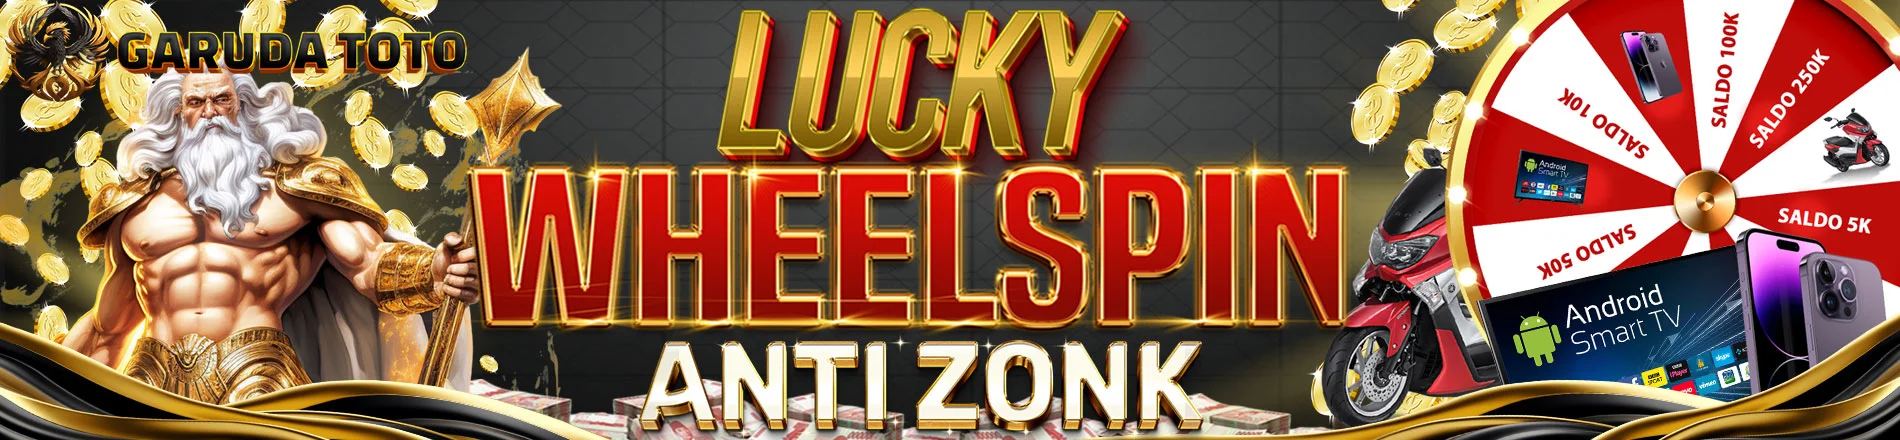 Bonus Lucky Wheelspin  - Garudatoto